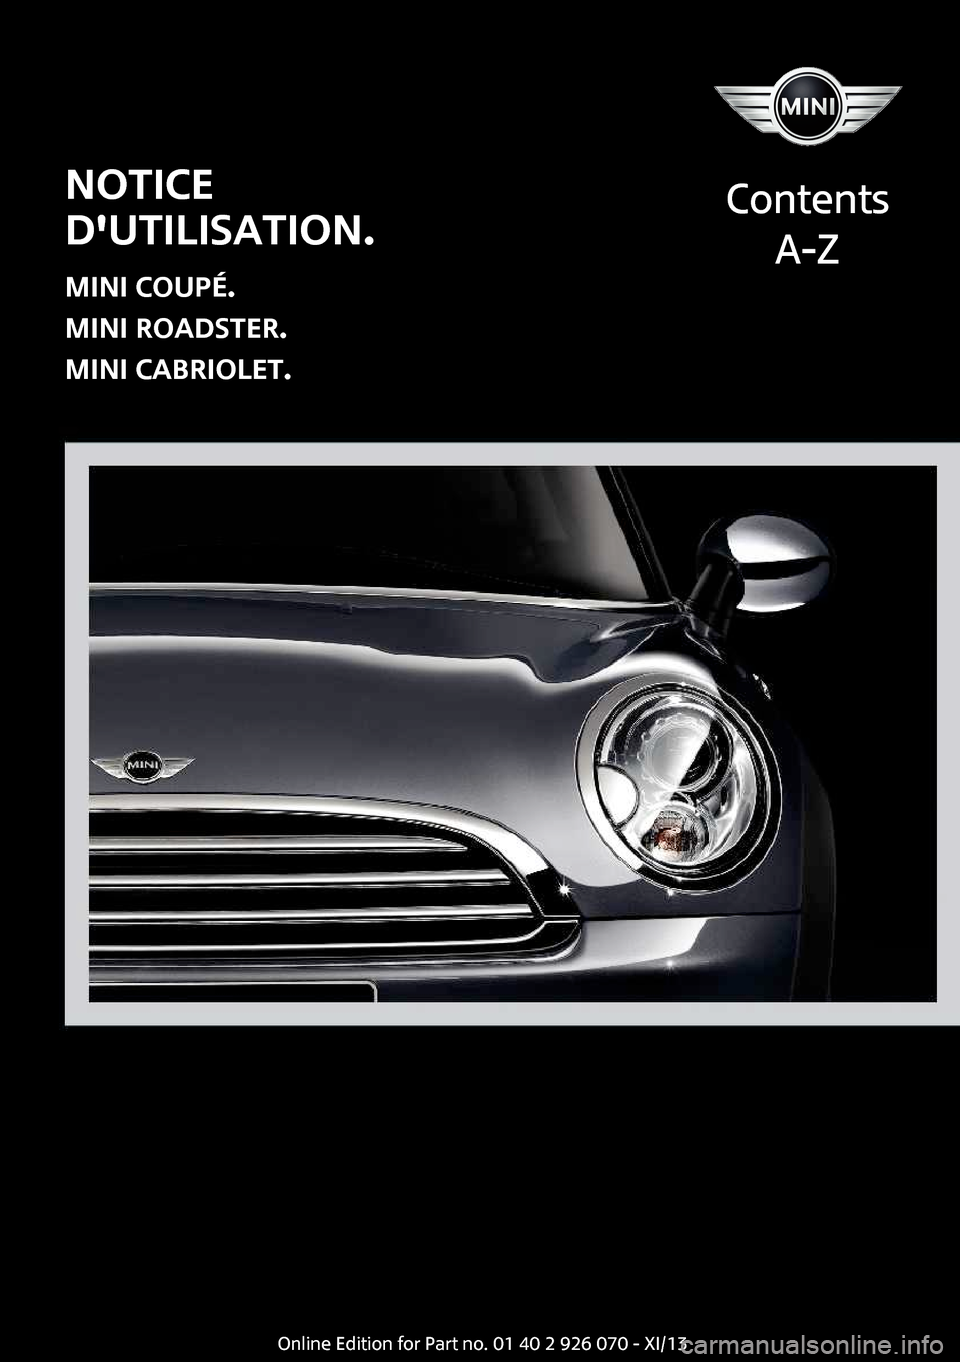 MINI Coupe 2013  Manuel du propriétaire (in French) Notice
dutilisation.
MINI Coupé.
MINI Roadster.
MINI Cabriolet.
Contents
A-ZOnline Edition for Part no. 01 40 2 911 499 - VI/13  